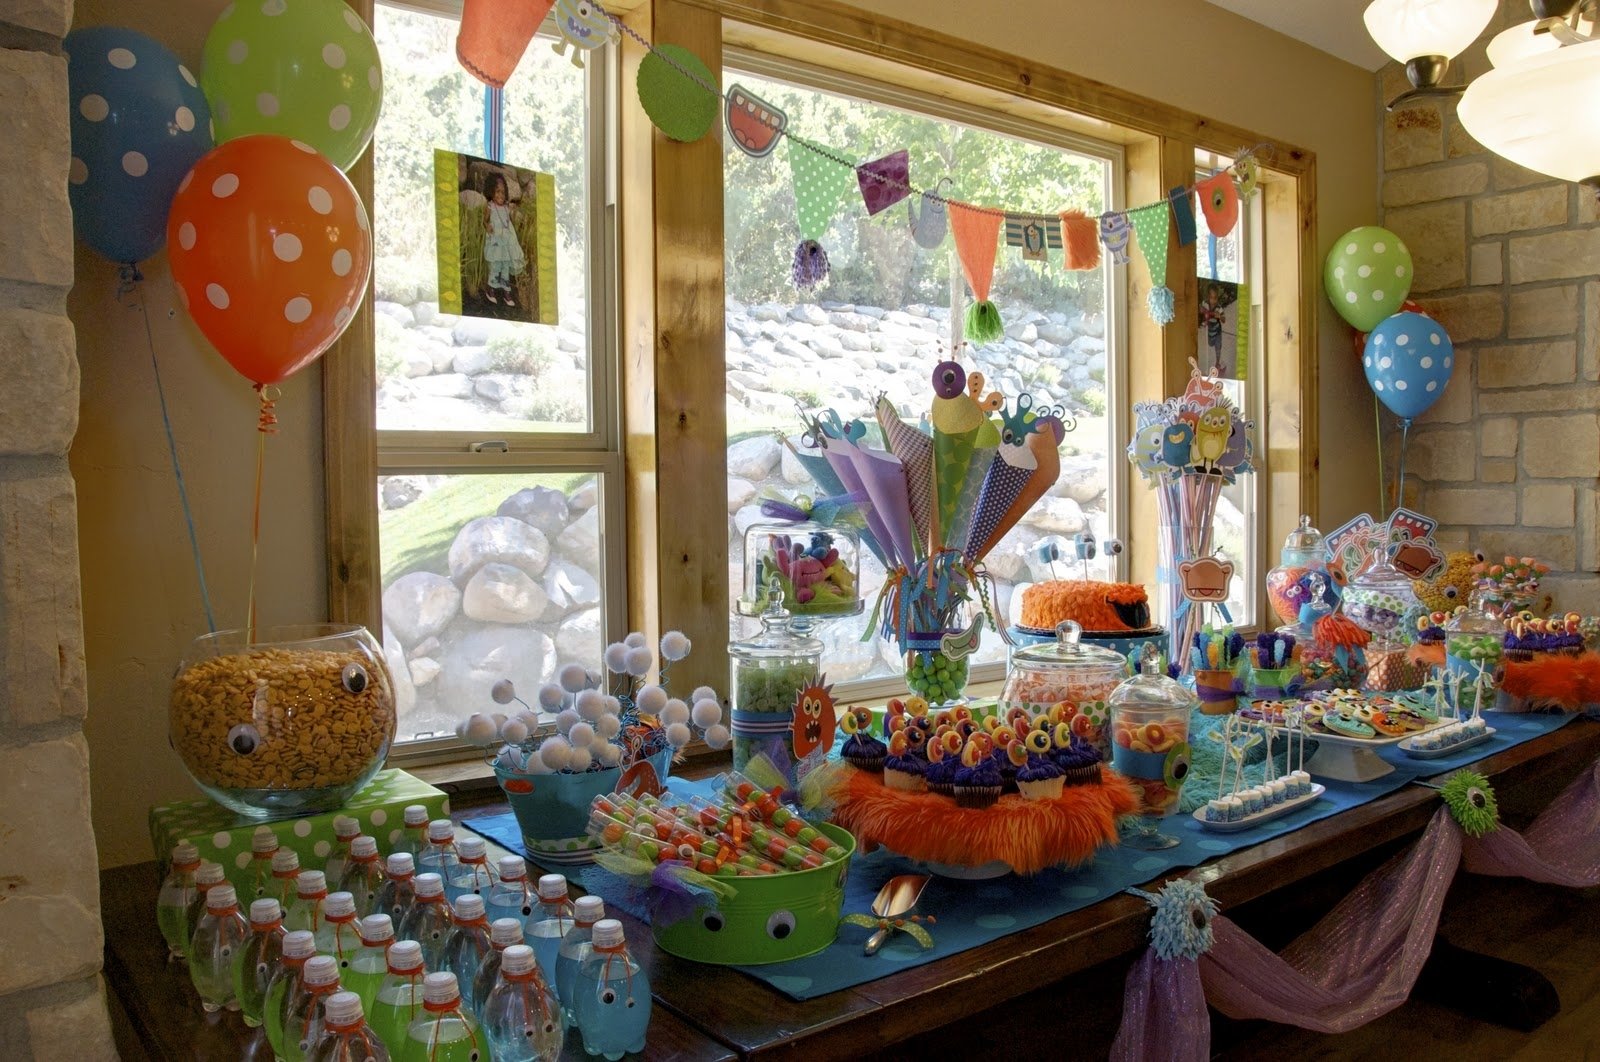 10 Pretty Birthday Party Ideas For 3 Year Old Boy 3 year old birthday party ideas nisartmacka 7 2023